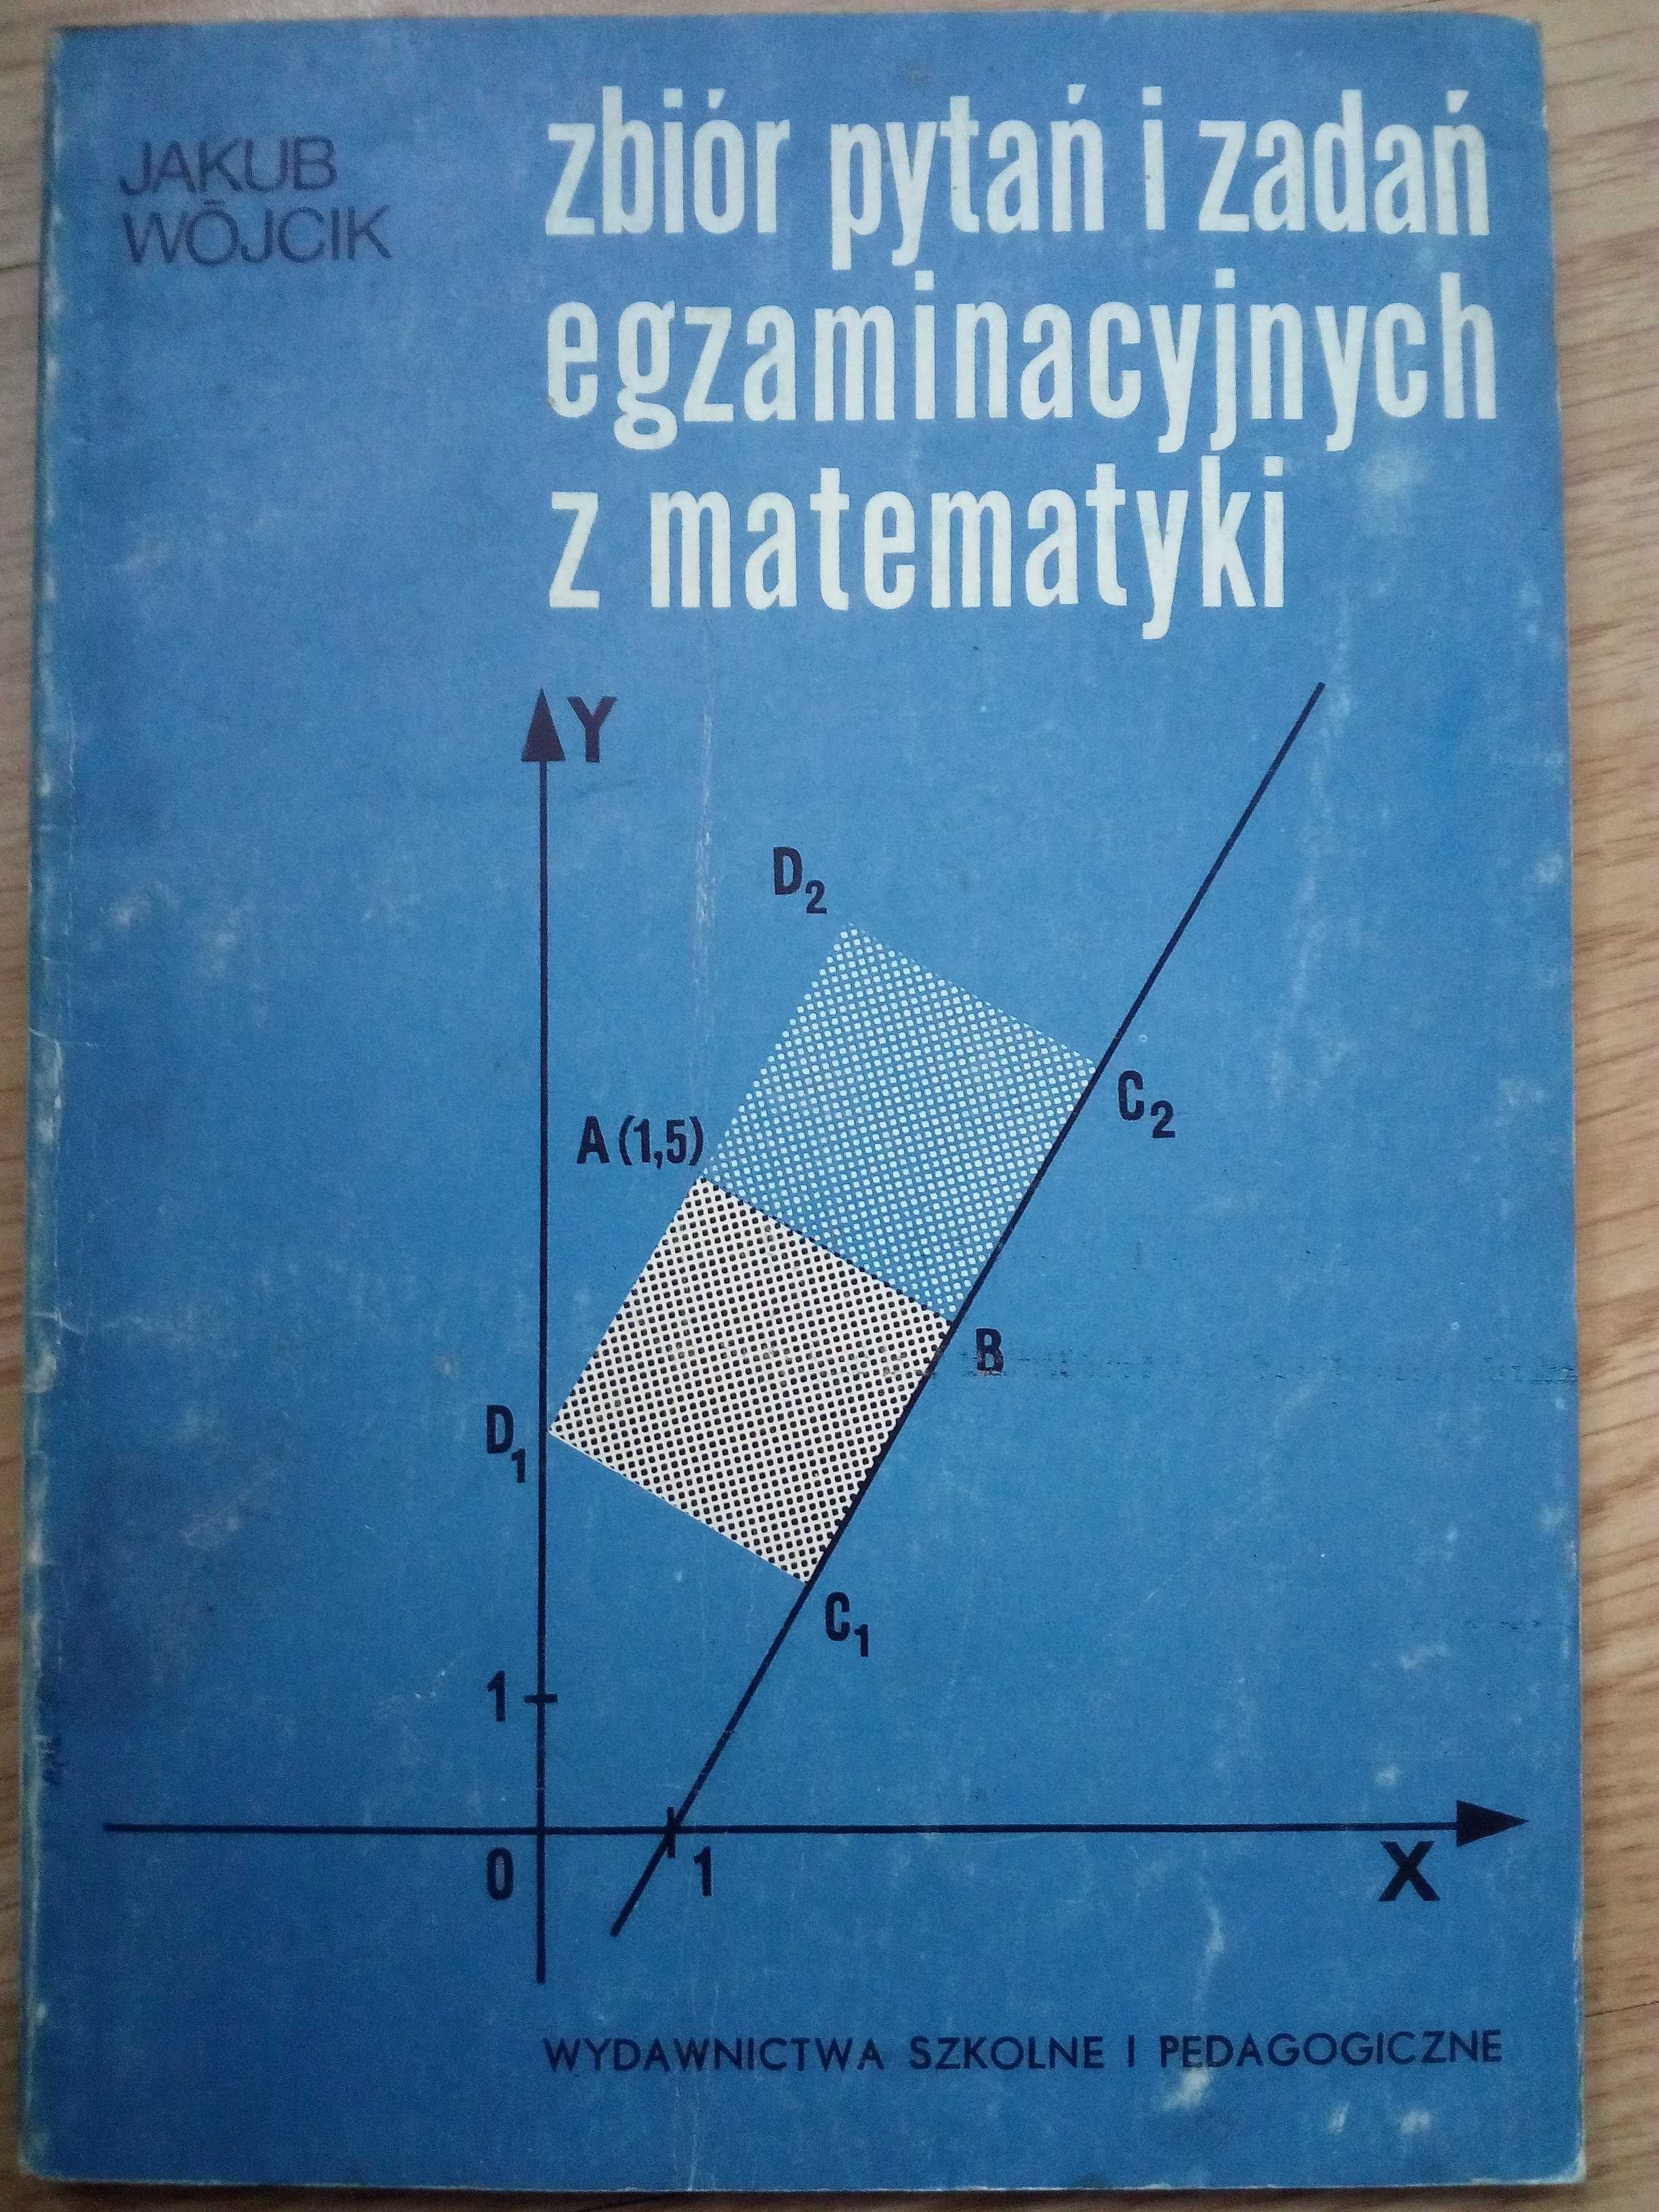 Jakub Wójcik, Zbiór pytań i zadań egzaminacyjnych z matematyki